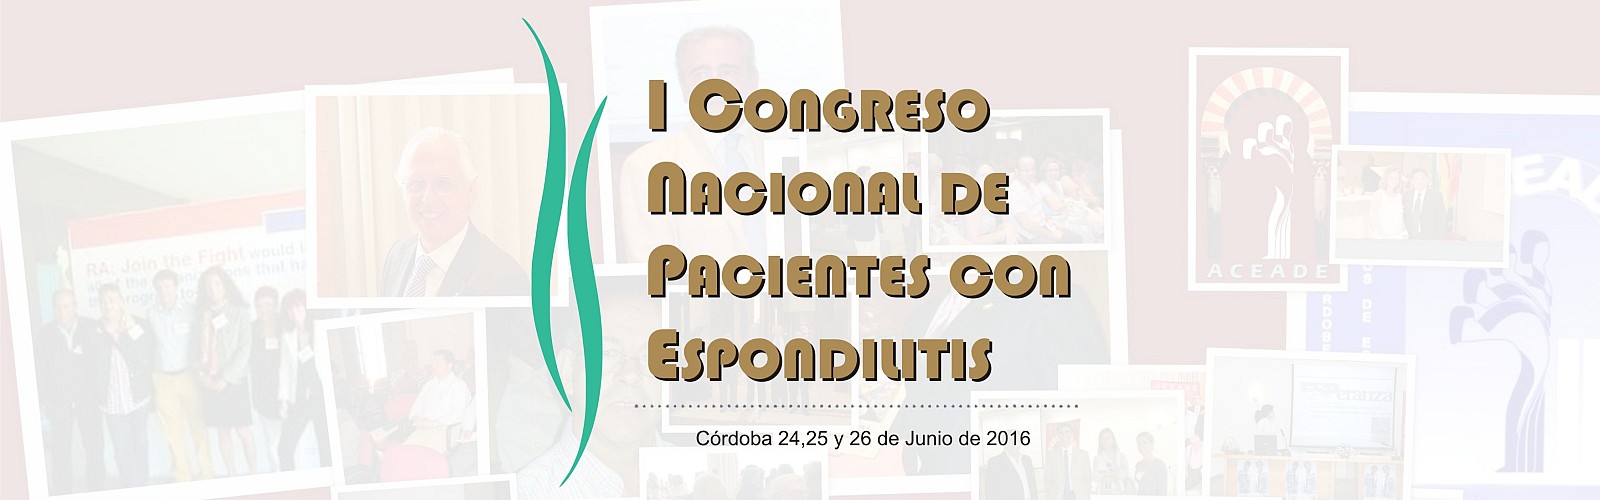 I Congreso Nacional de Pacientes con Espondilitis